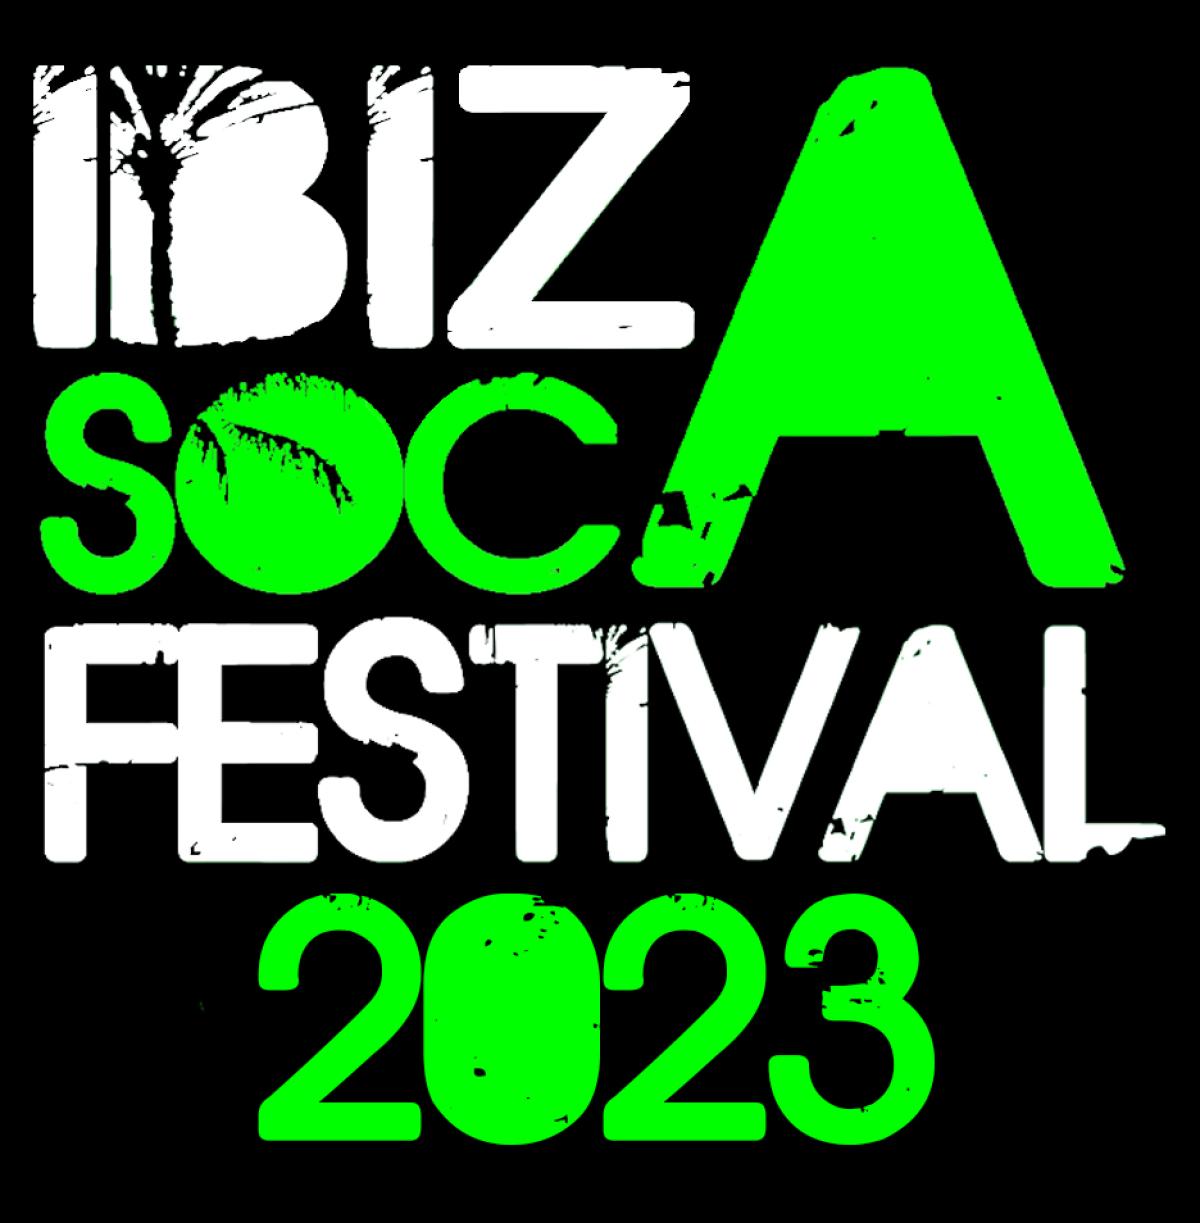 Ibiza Soca flyer or graphic.